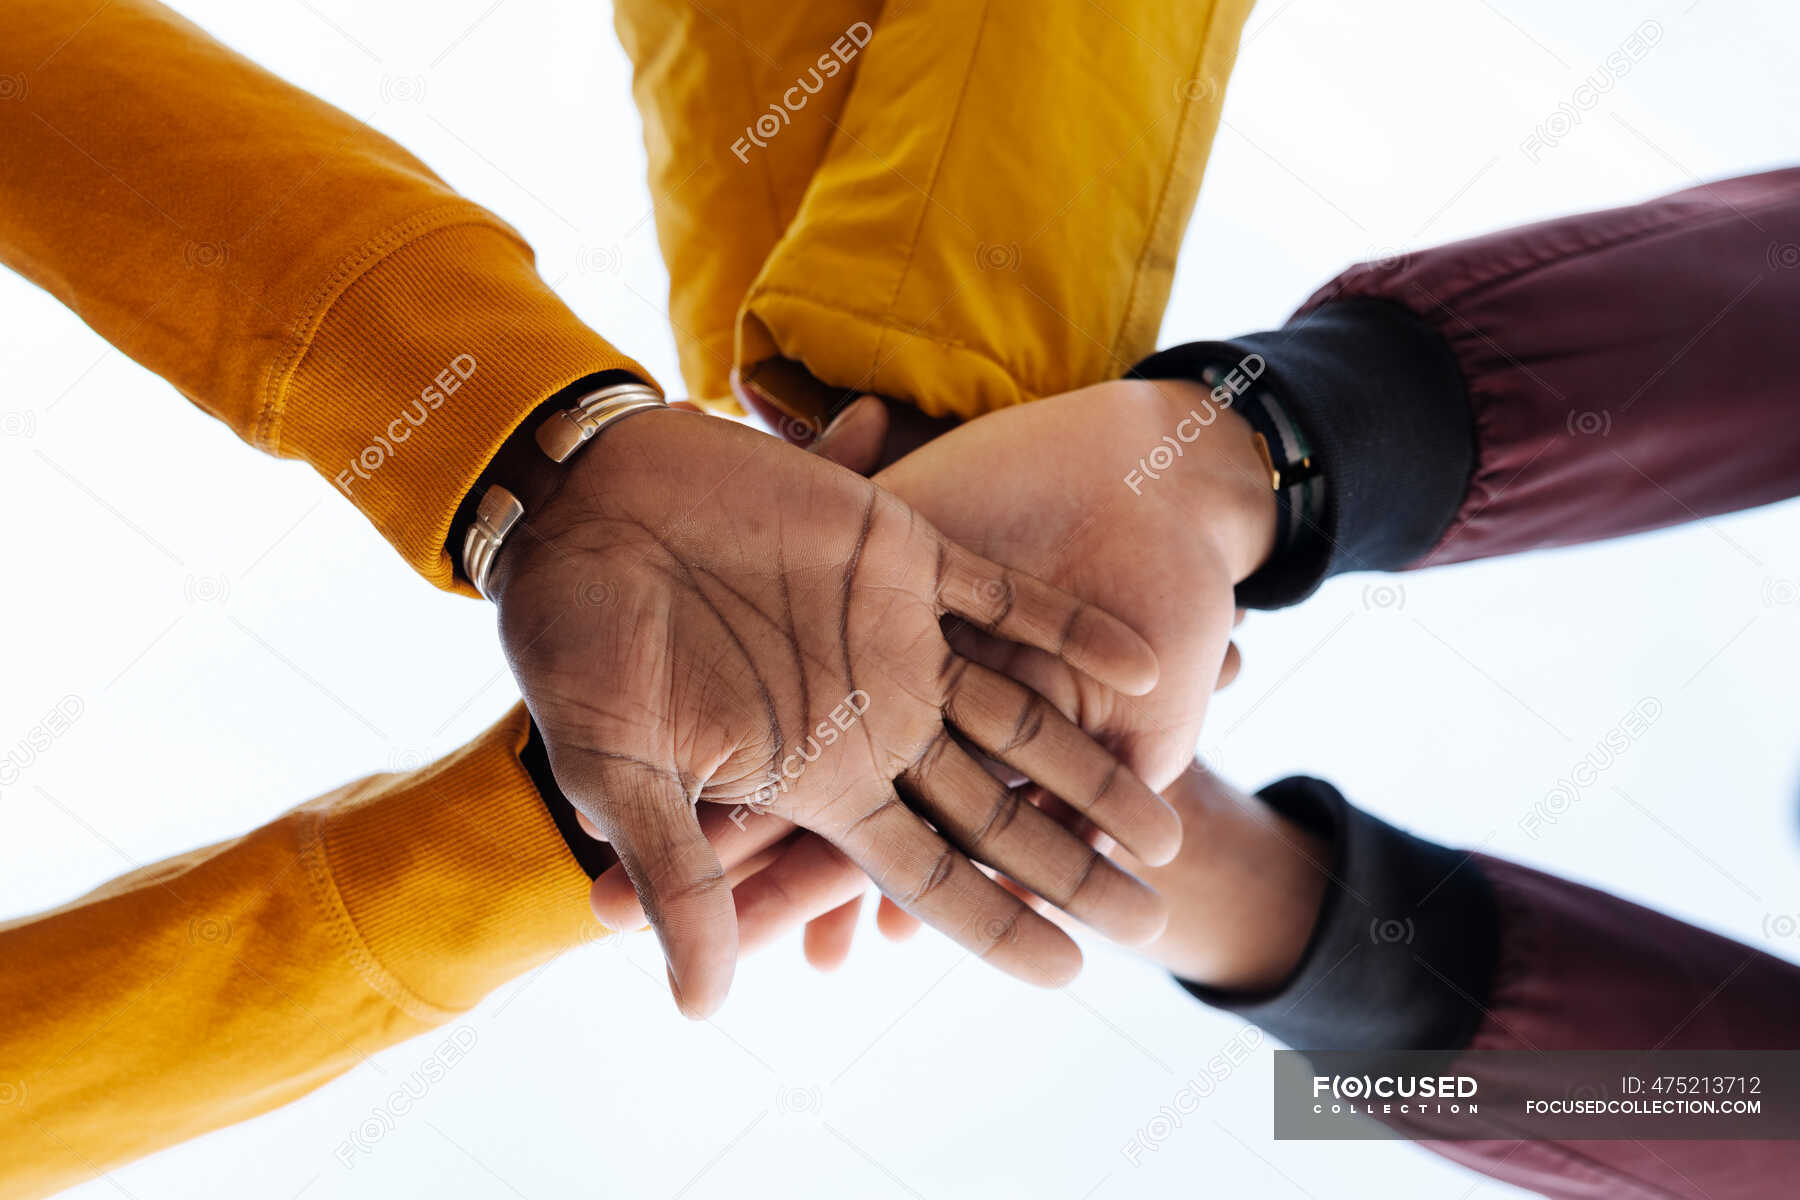 Рукопожатие друзей. Руки складывают друг на друга. Фото жмут руки друг другу хоккеисты.